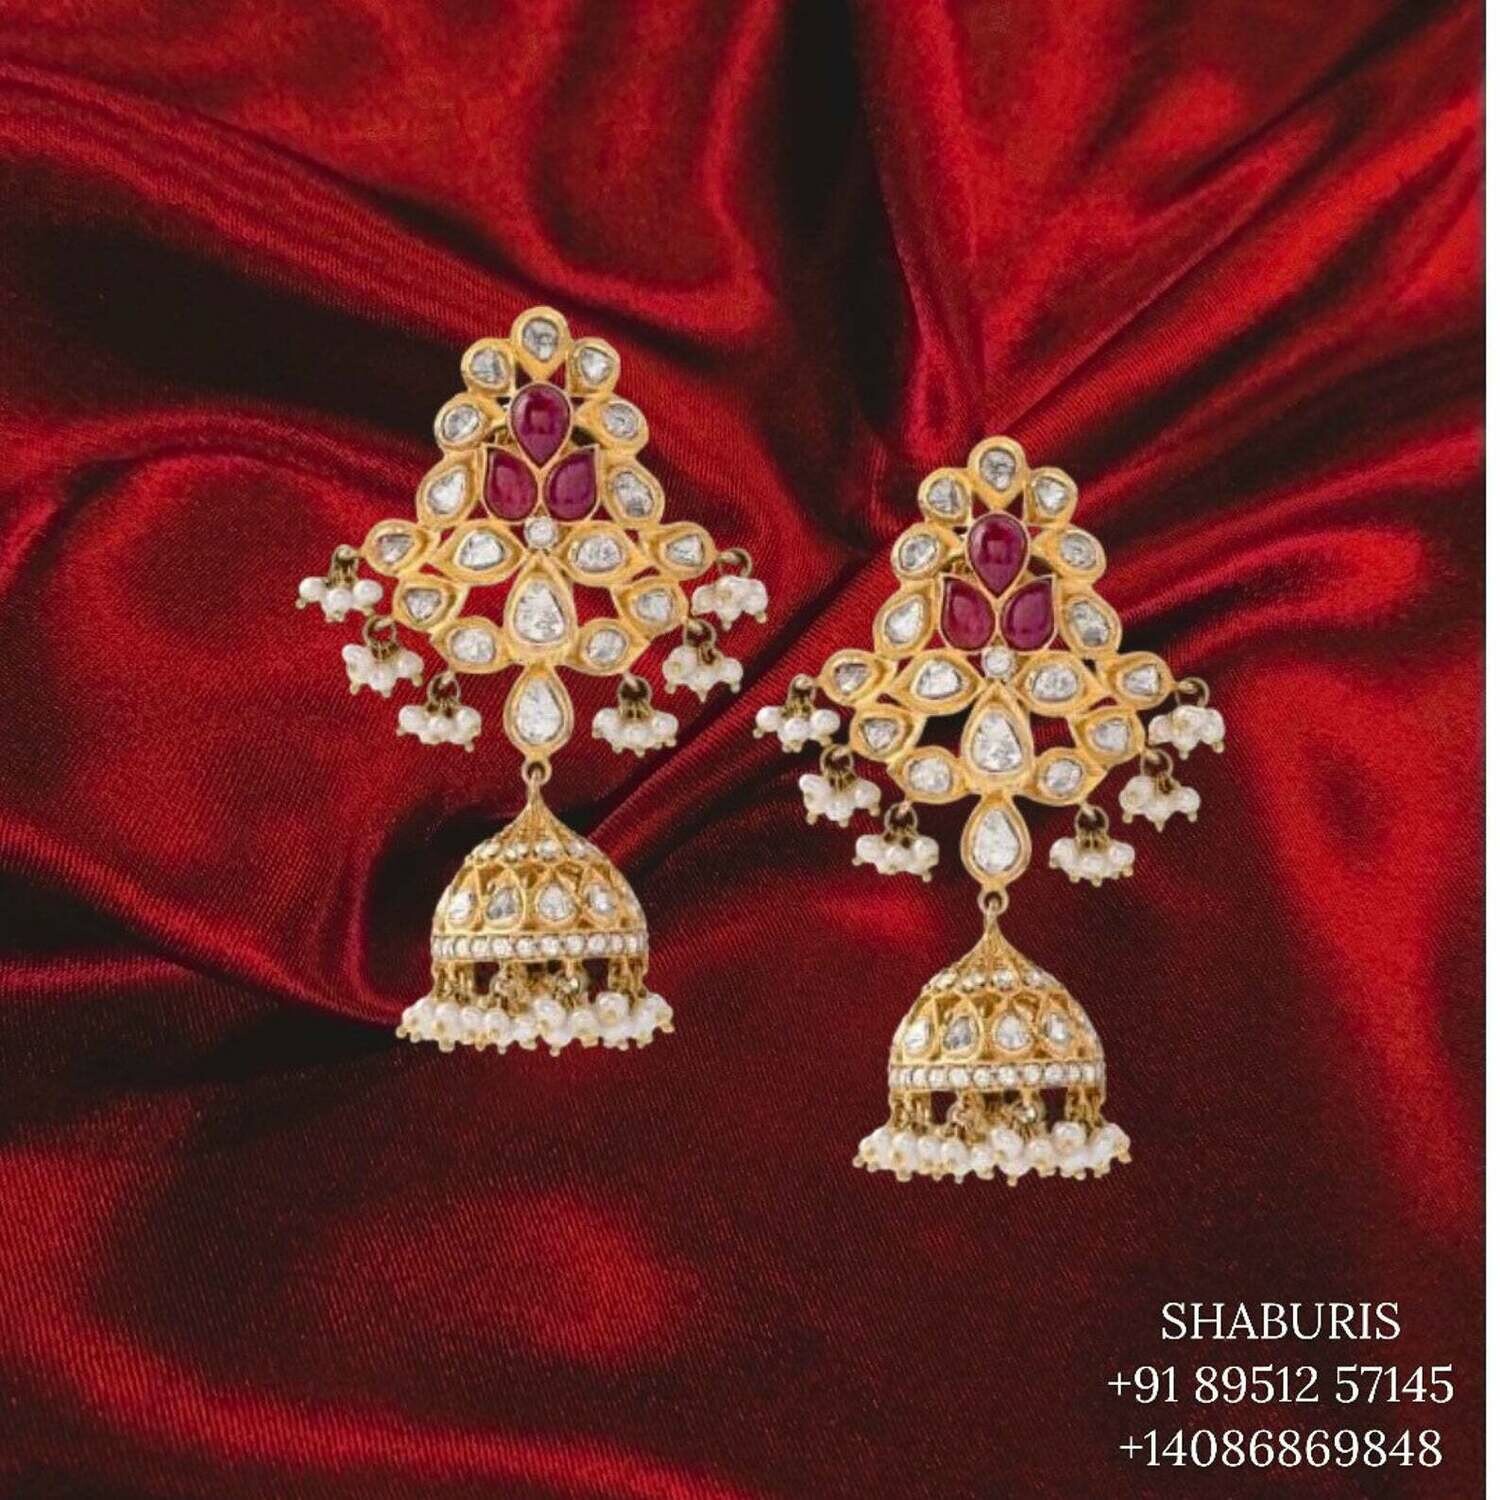 Indian Jewelry,Pure Silver Jewellery,polki earrings diamond jhumka diamond earrings ,Indian Wedding Jewelry-NIHIRA-SHABURIS